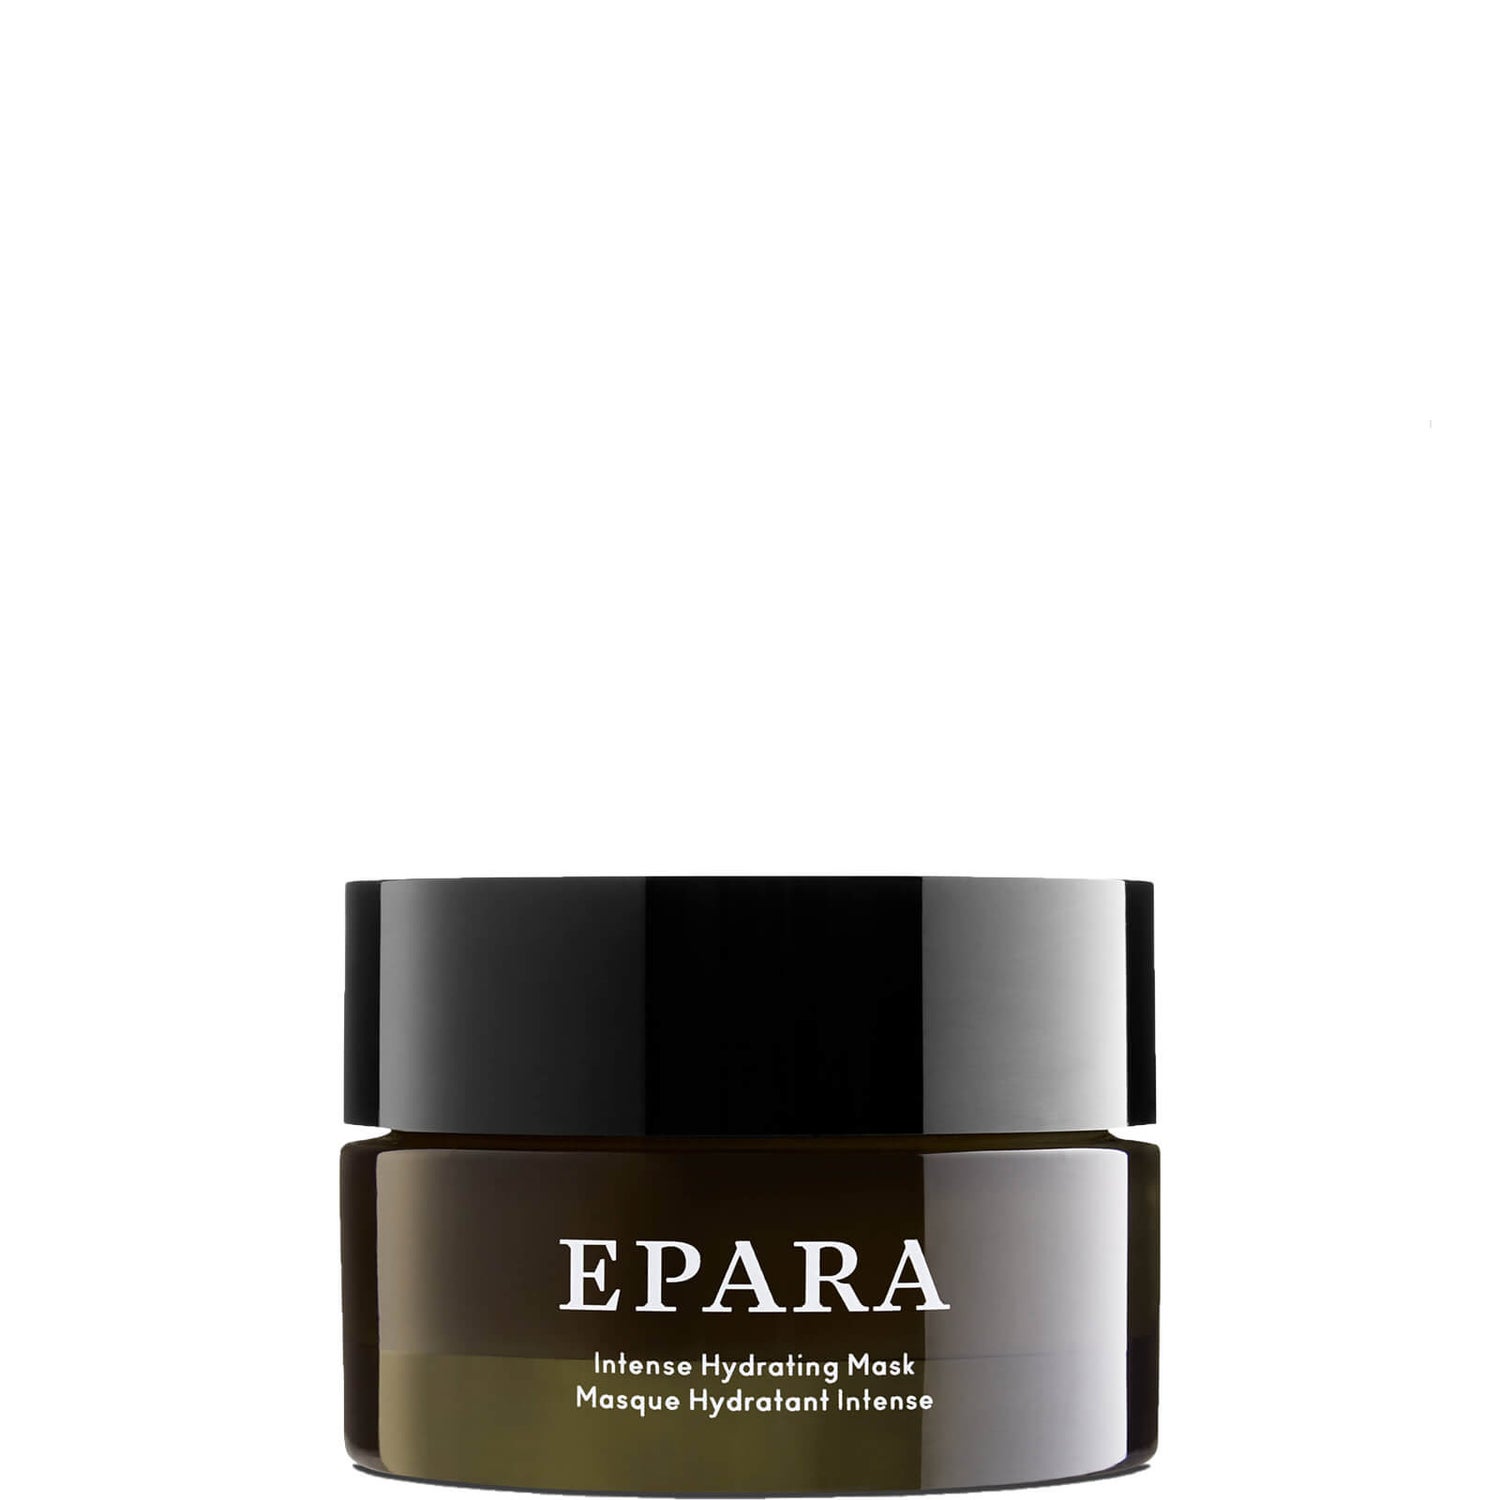 EPARA Intense Hydrating Mask 1.76 fl. oz.